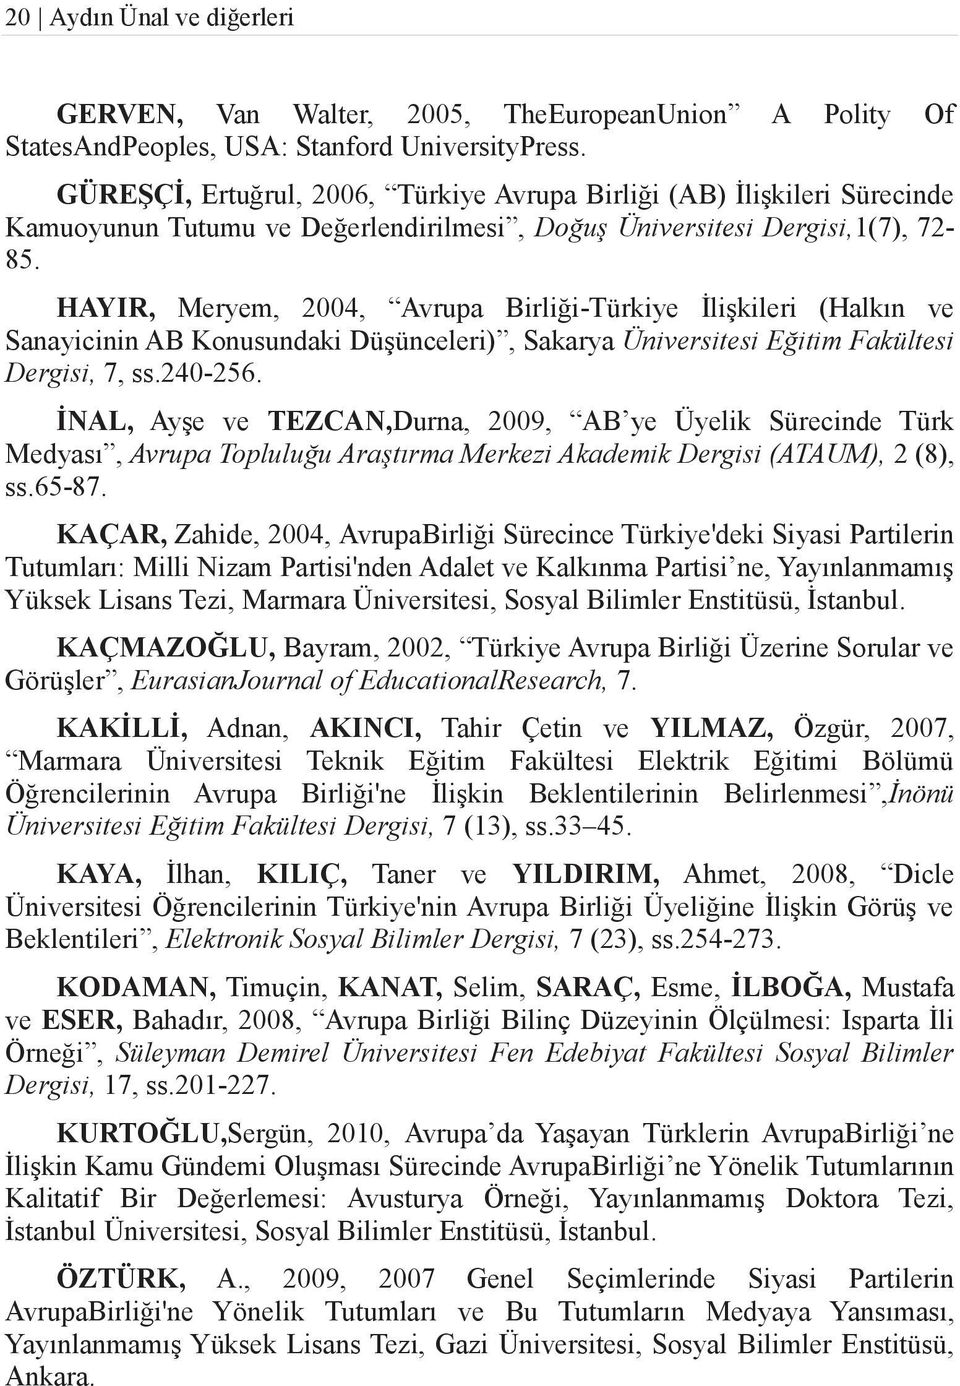 HAYIR, Meryem, 2004, Avrupa Birliği-Türkiye İlişkileri (Halkın ve Sanayicinin AB Konusundaki Düşünceleri), Sakarya Üniversitesi Eğitim Fakültesi Dergisi, 7, ss.240-256.